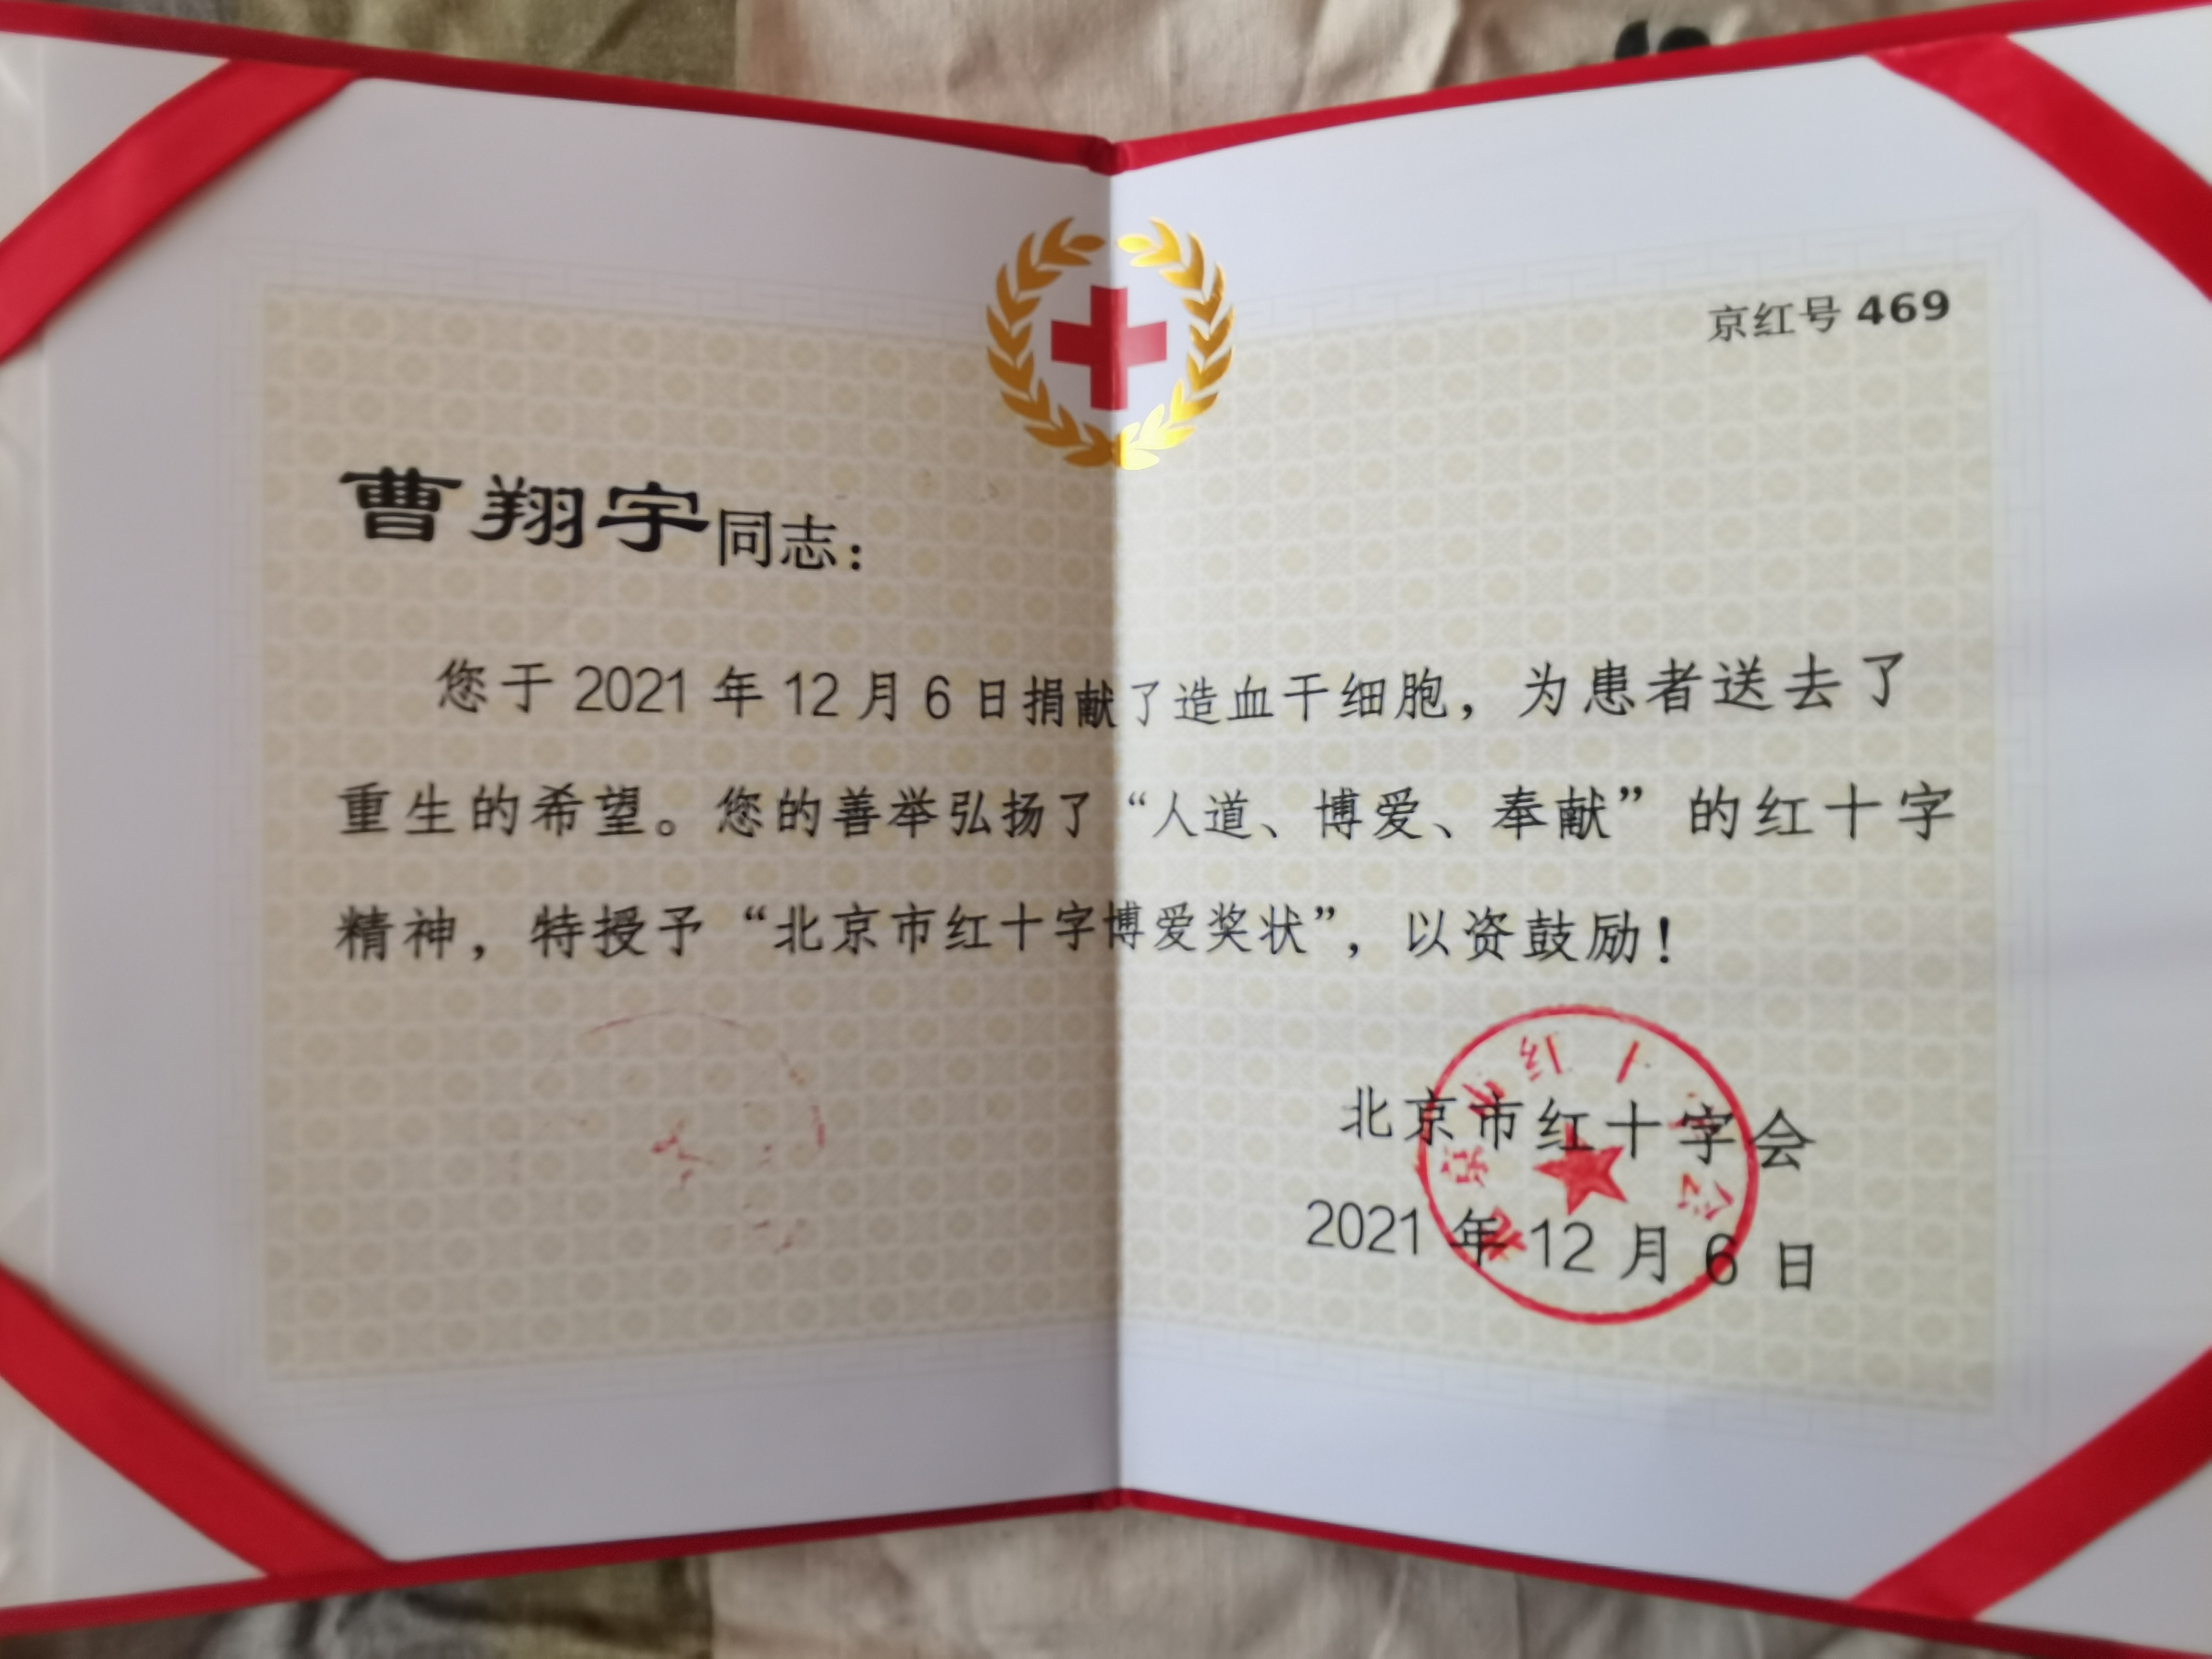 20211206-造血干细胞捐献-红十字会学生分会-向曹翔宇同学颁发的证书2jpg